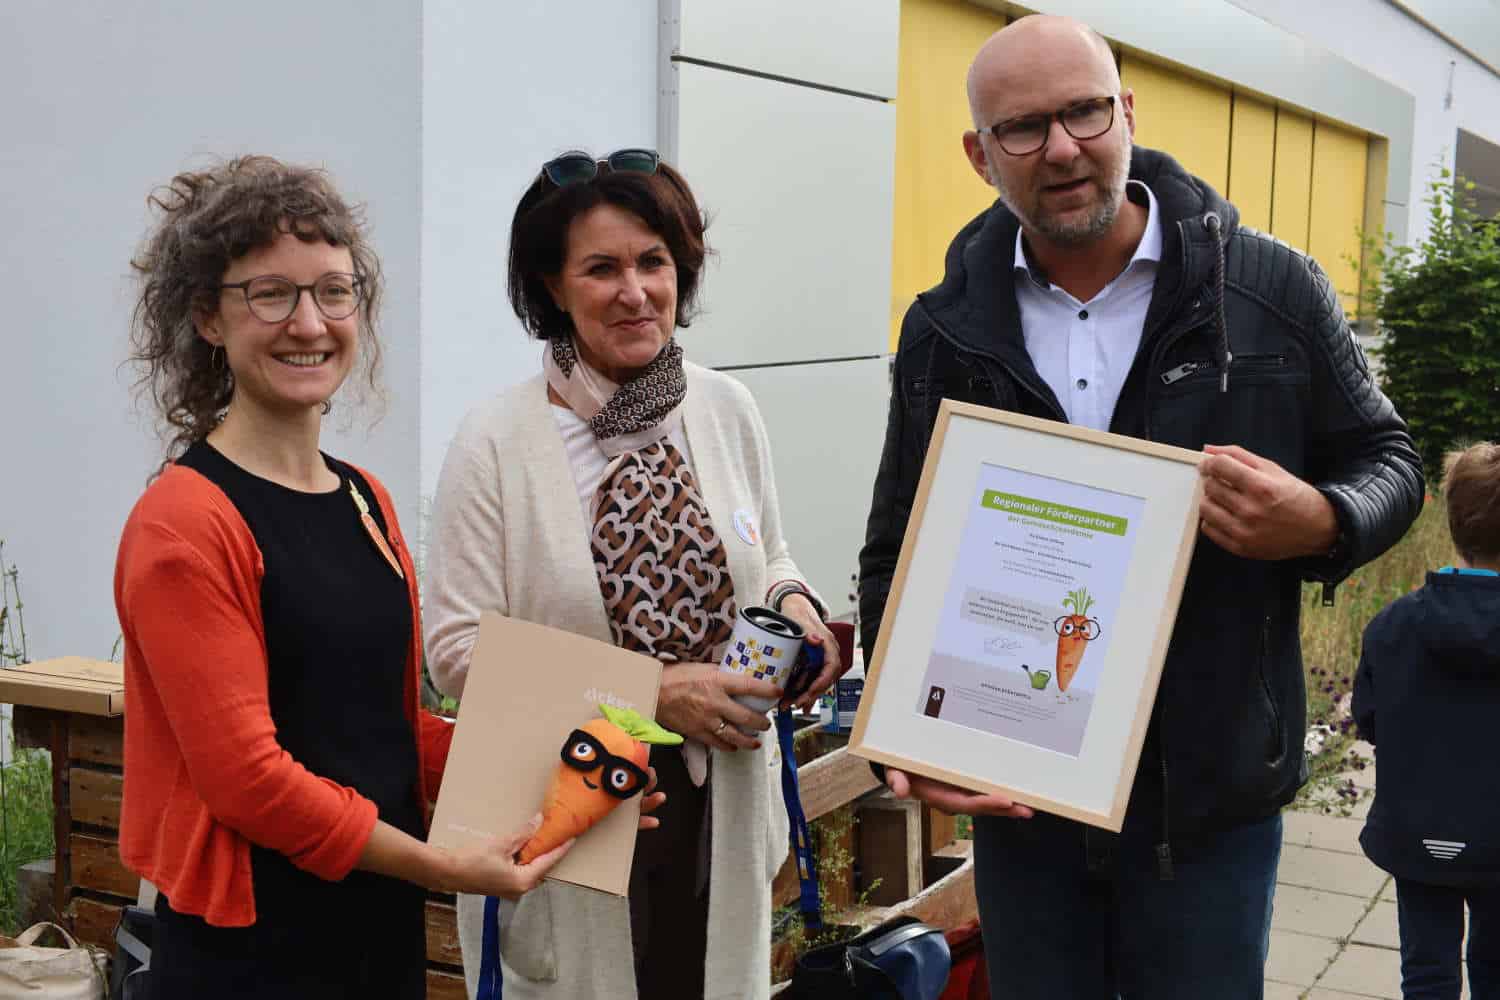 Eine Urkunde für den Stiftungsbotschafter: Jolantha Schenke, Heike Simone Riethmüller und Nico Meincke. Foto: Ralf Julke